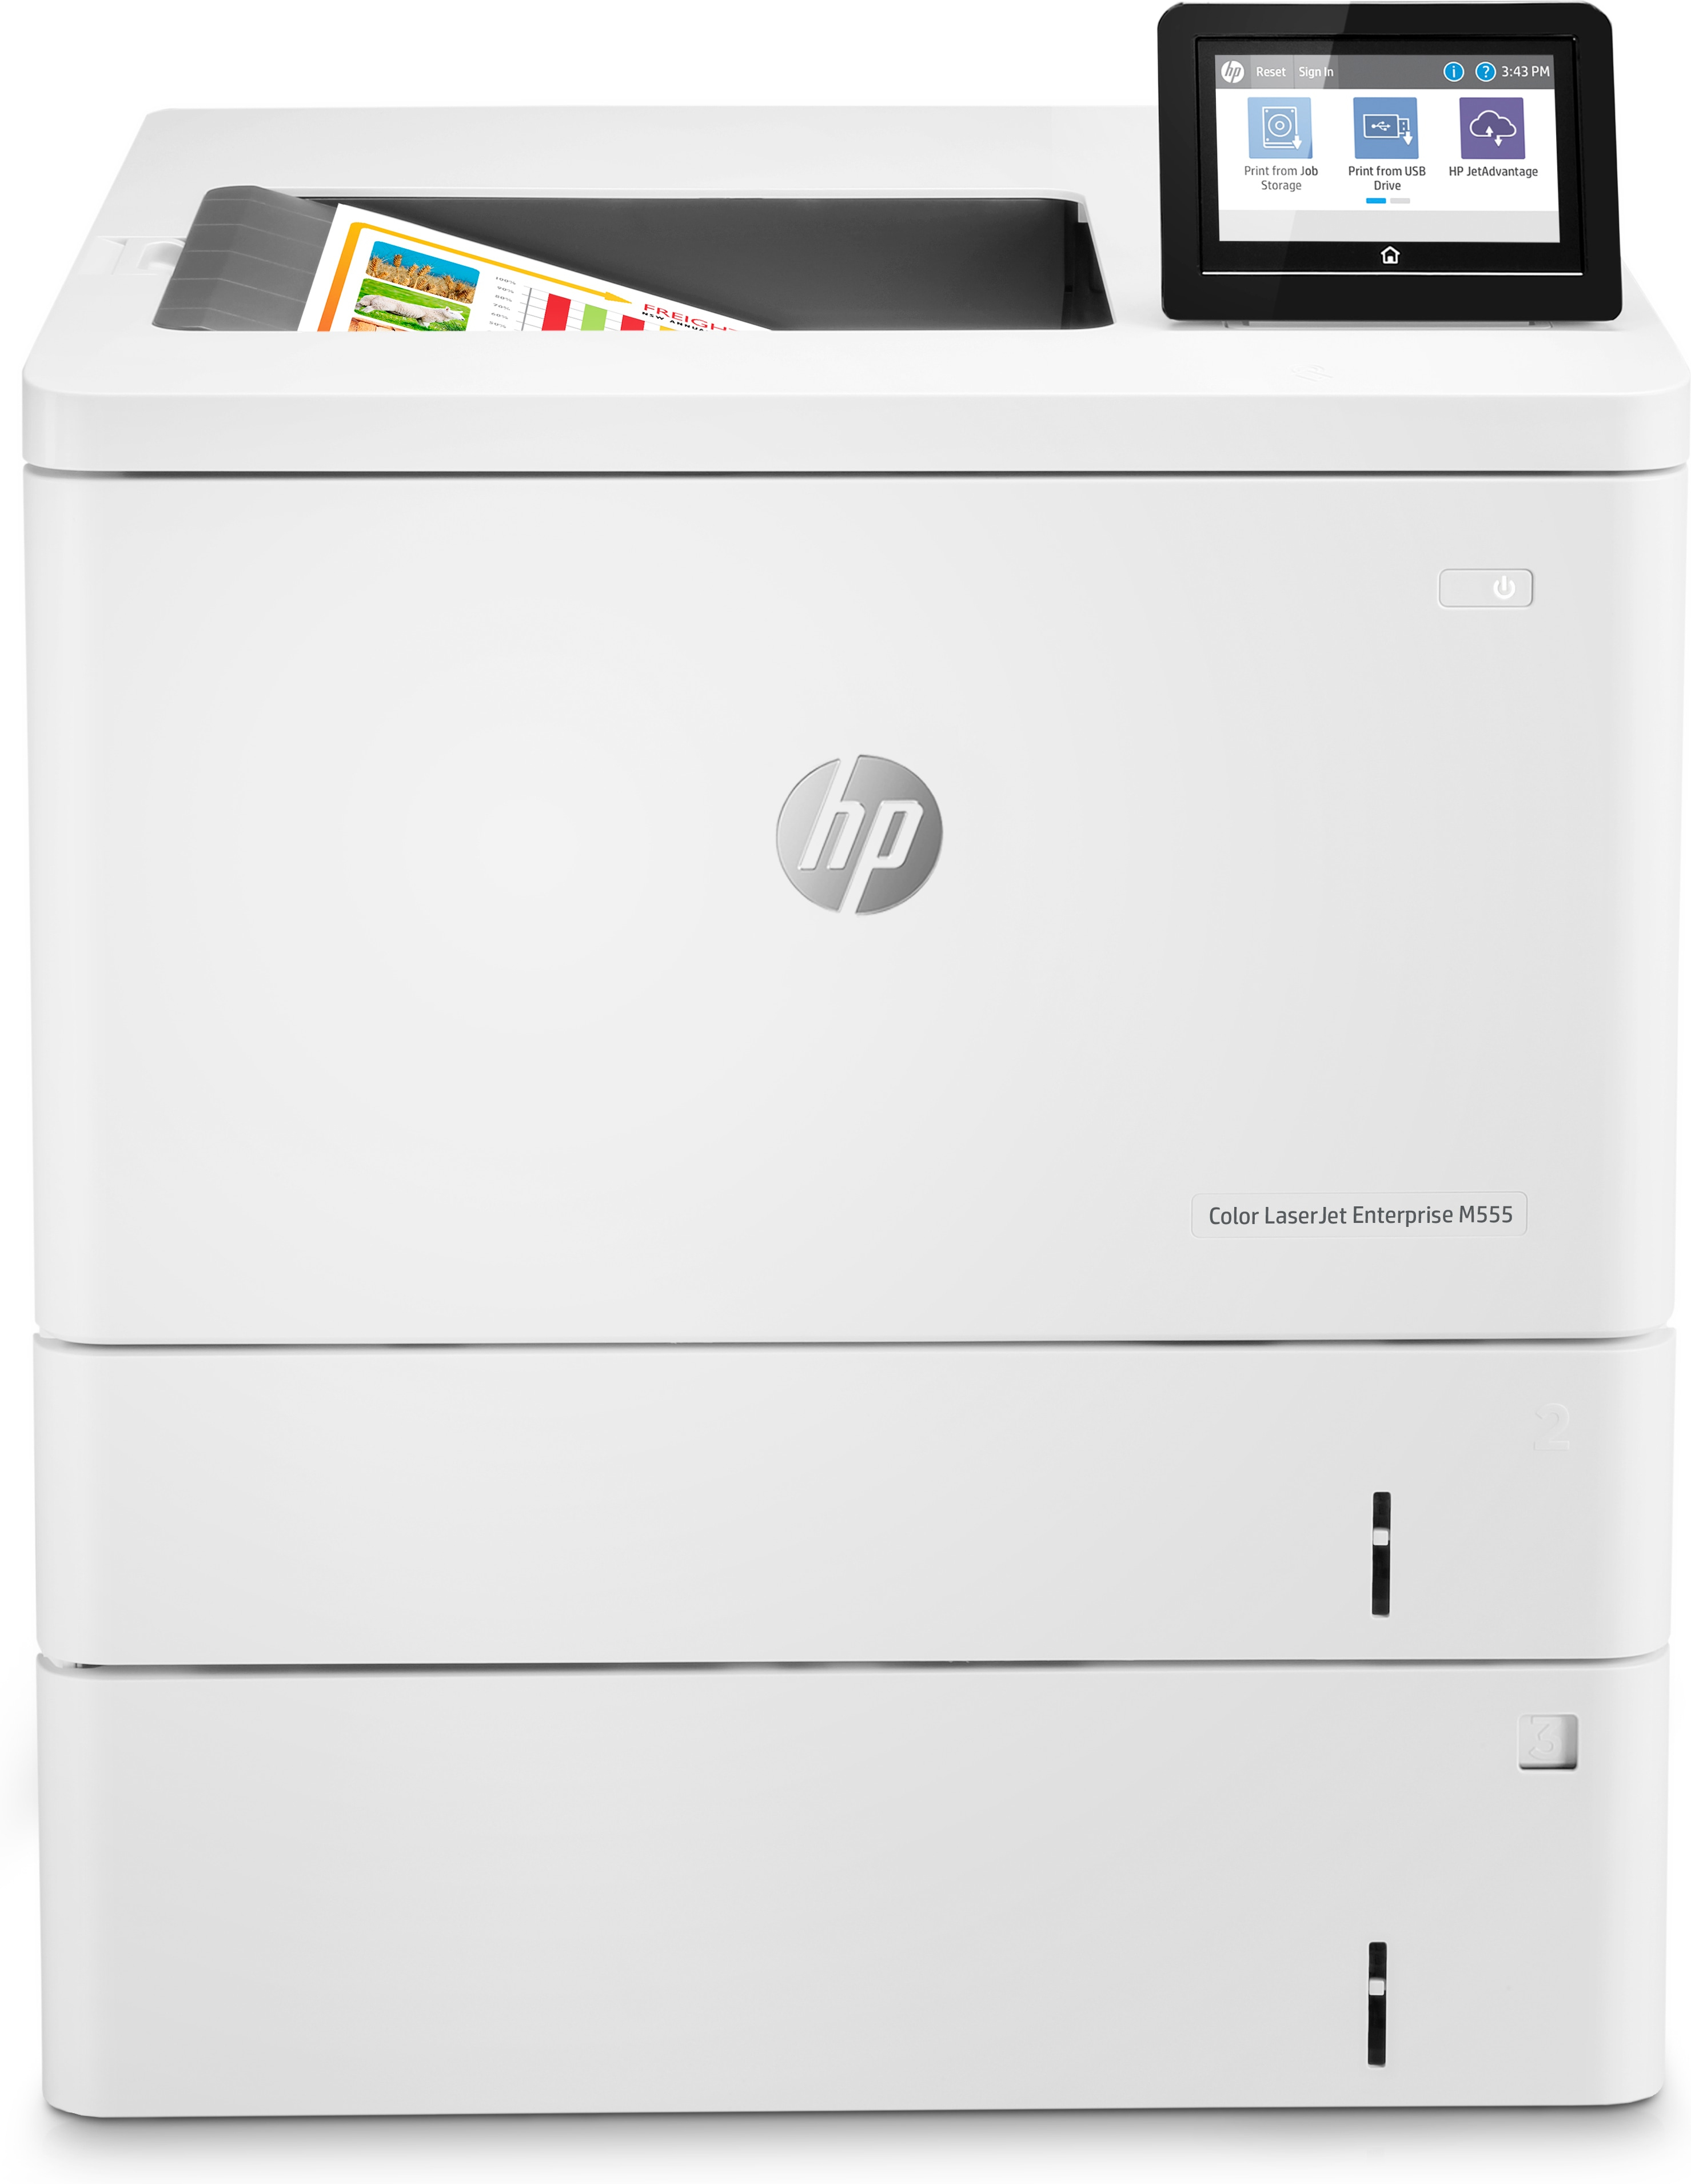 HP HP Color LaserJet Enterprise M555x, Color, Printer voor Print, Dubbelzijdig printen